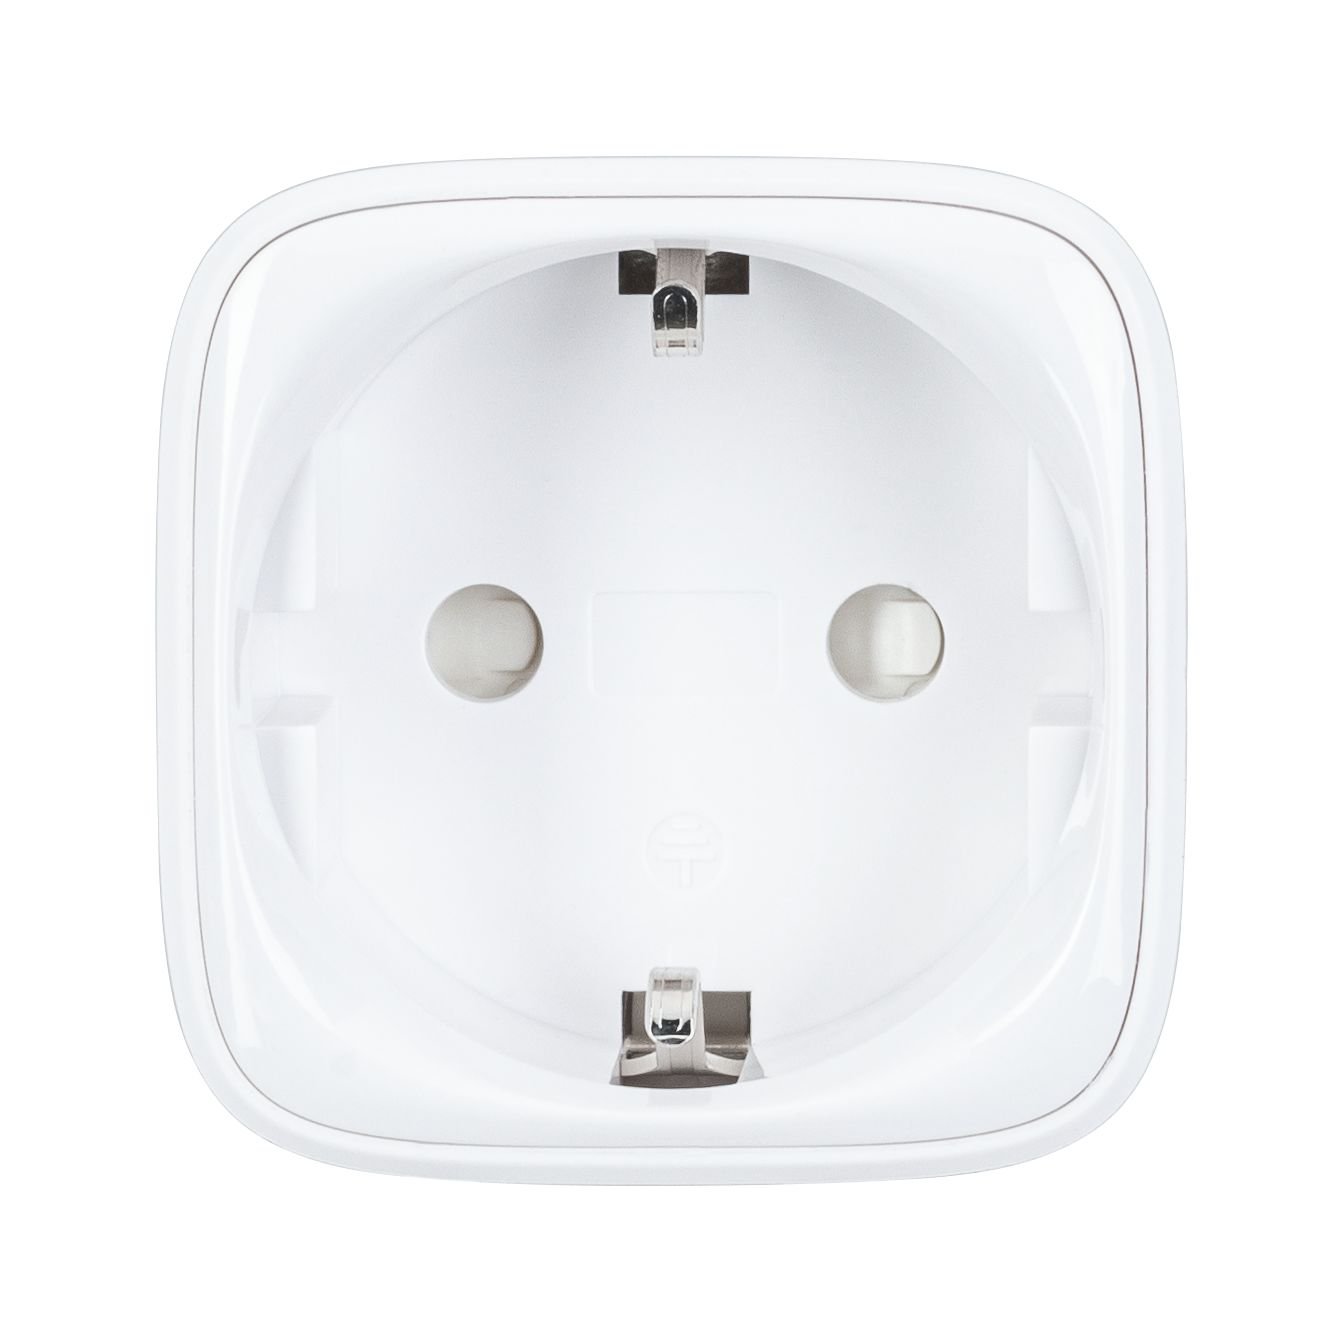 Zwischenstecker Smart Home Zigbee Smart Plug für Euro- und Schuko-Stecker Weiß